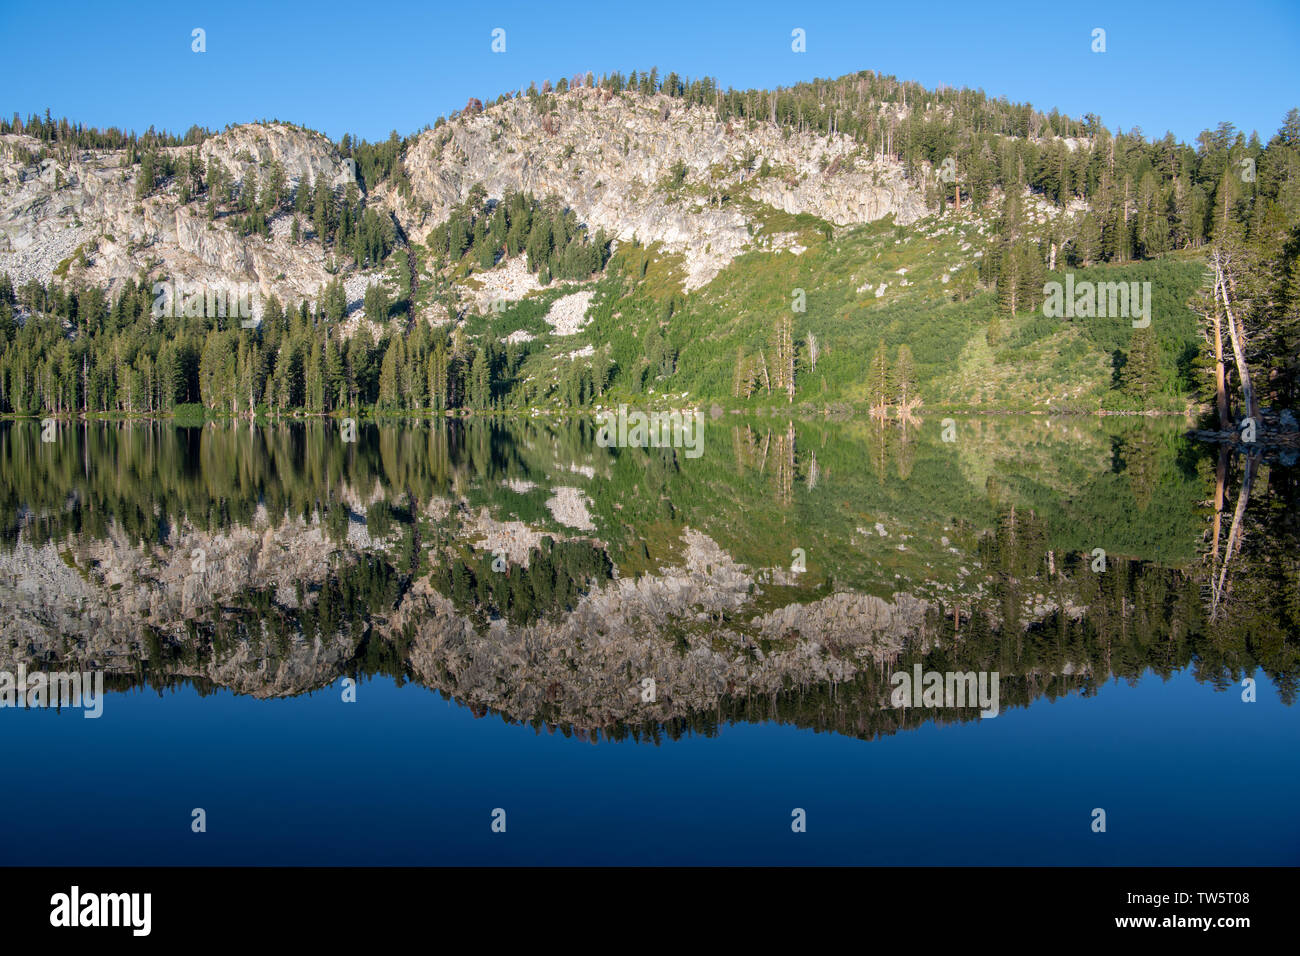 Ruhig, perfekt noch alpinen See widerspiegeln Pinien, Berge, blauer Himmel - Lake George in der kalifornischen Sierra Nevada Stockfoto